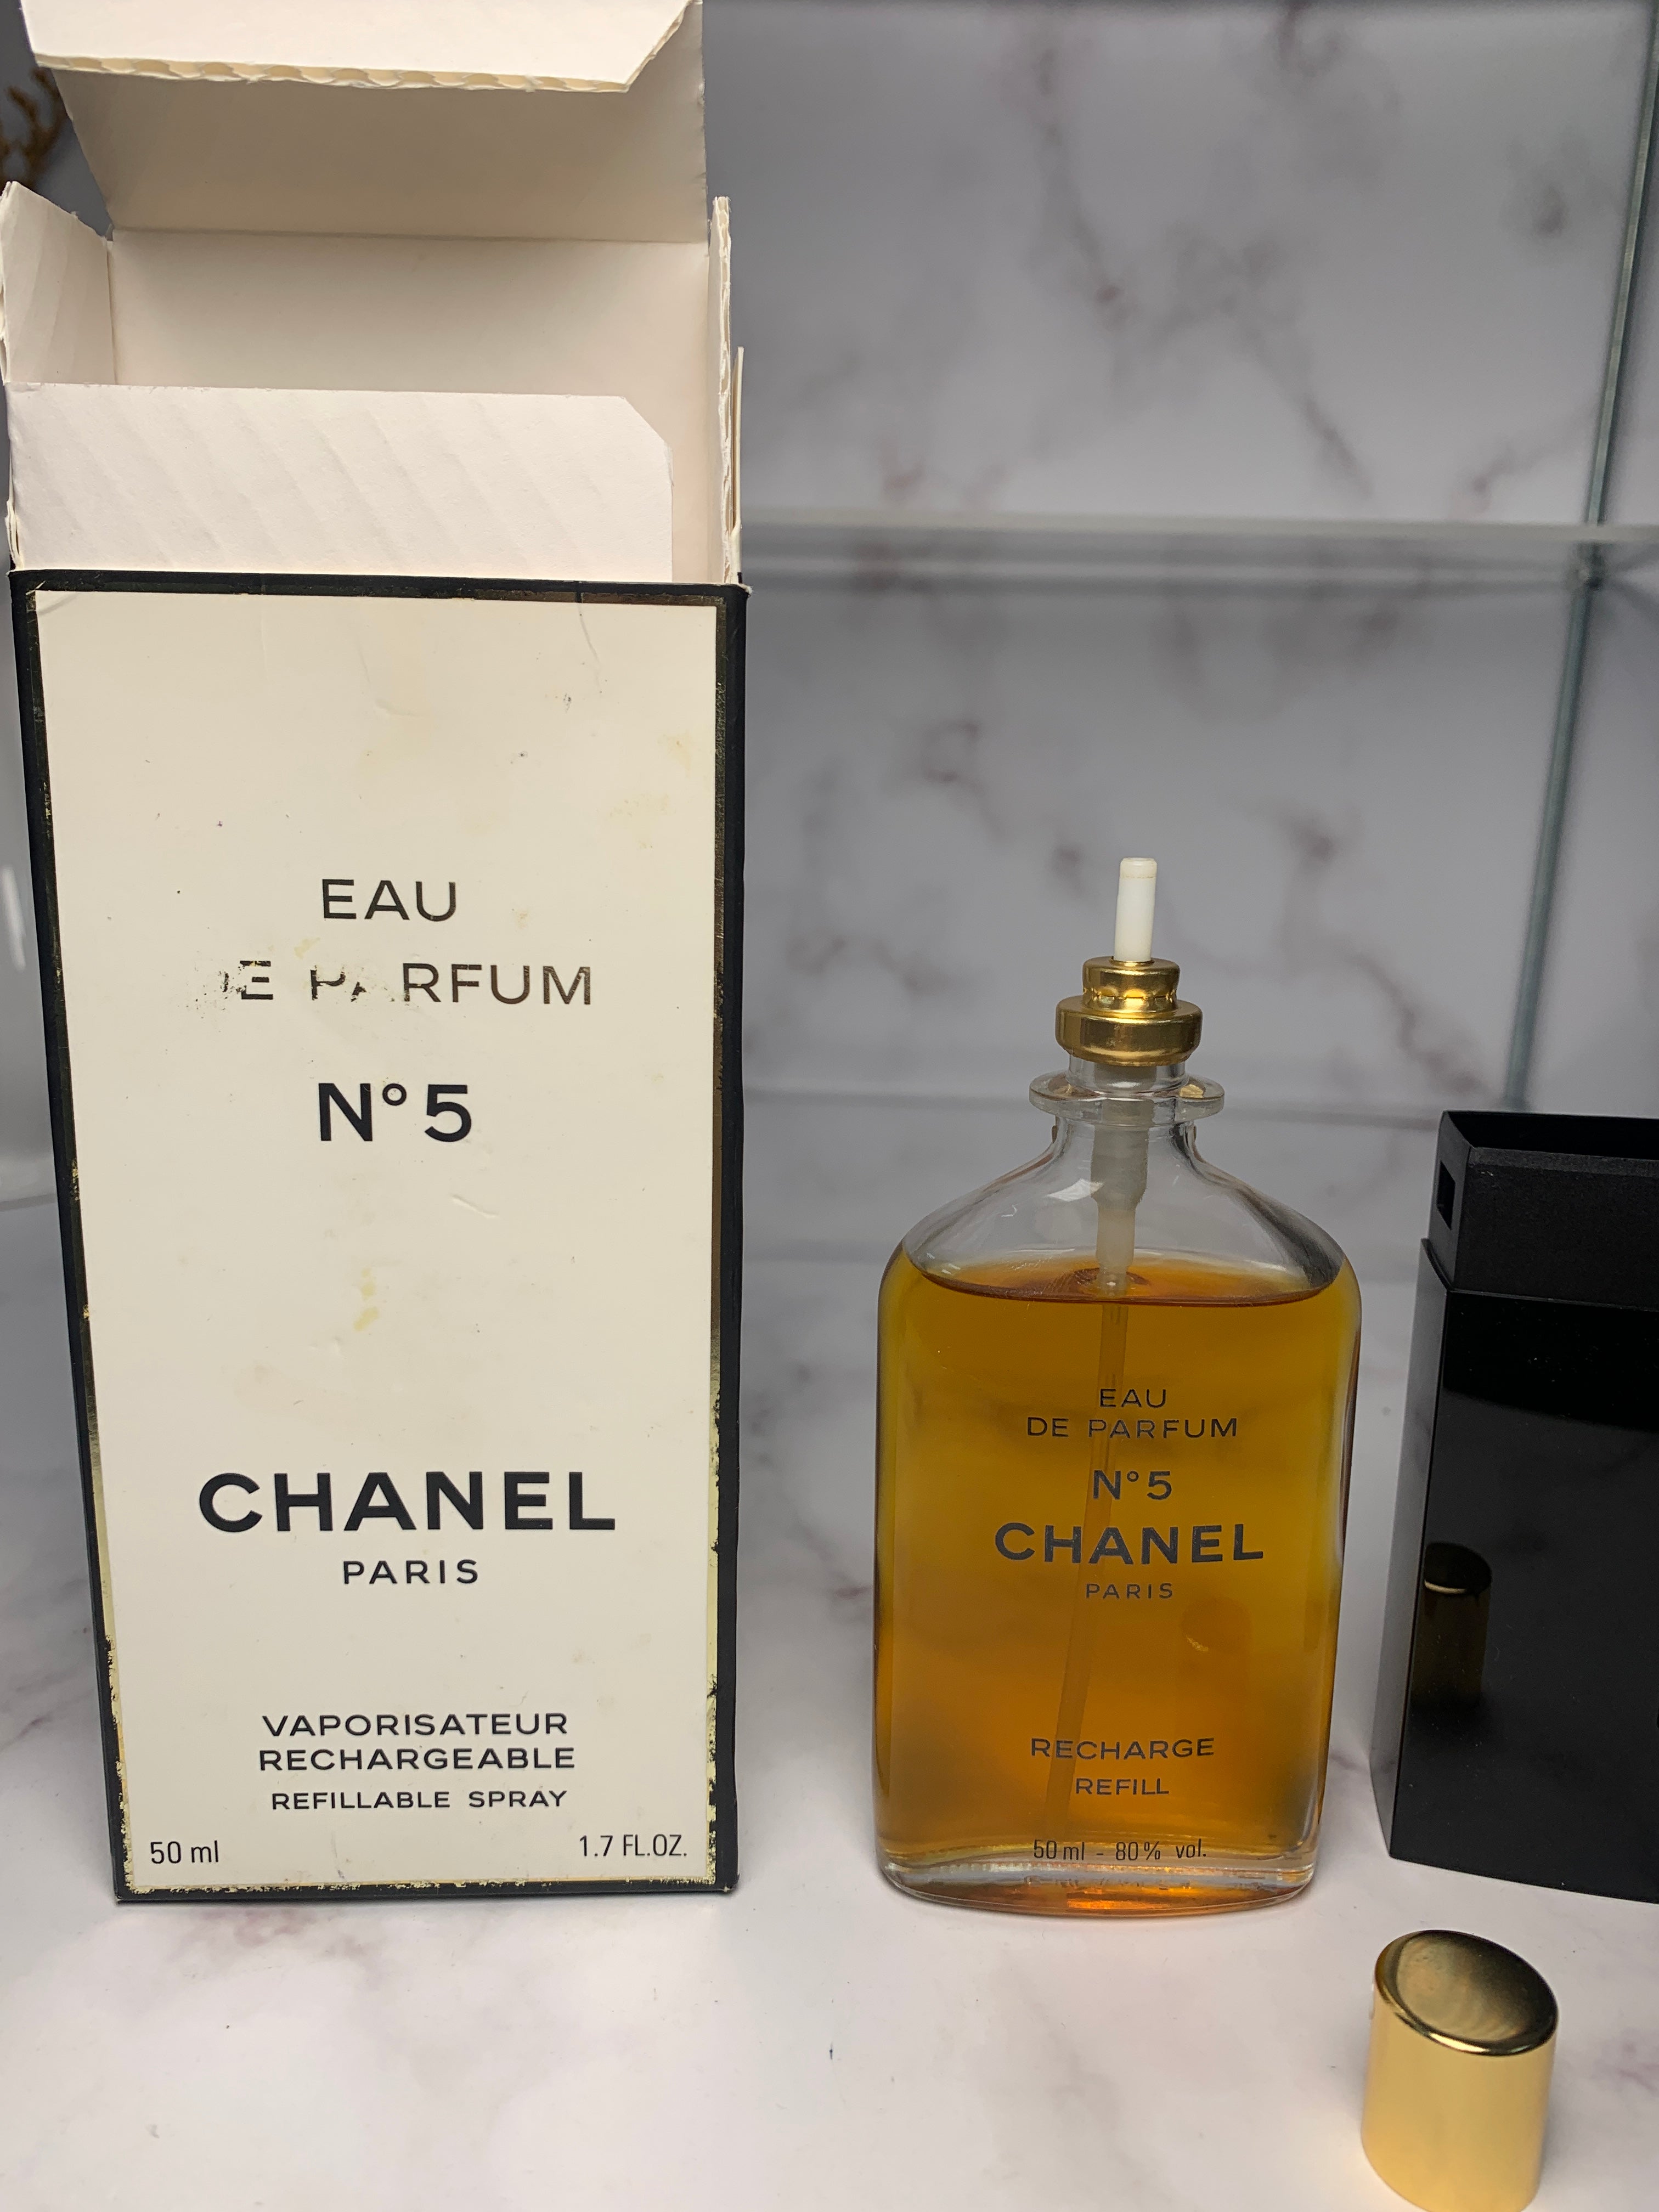 Antique Chanel Paris No.5 80 Eau De Toilette 